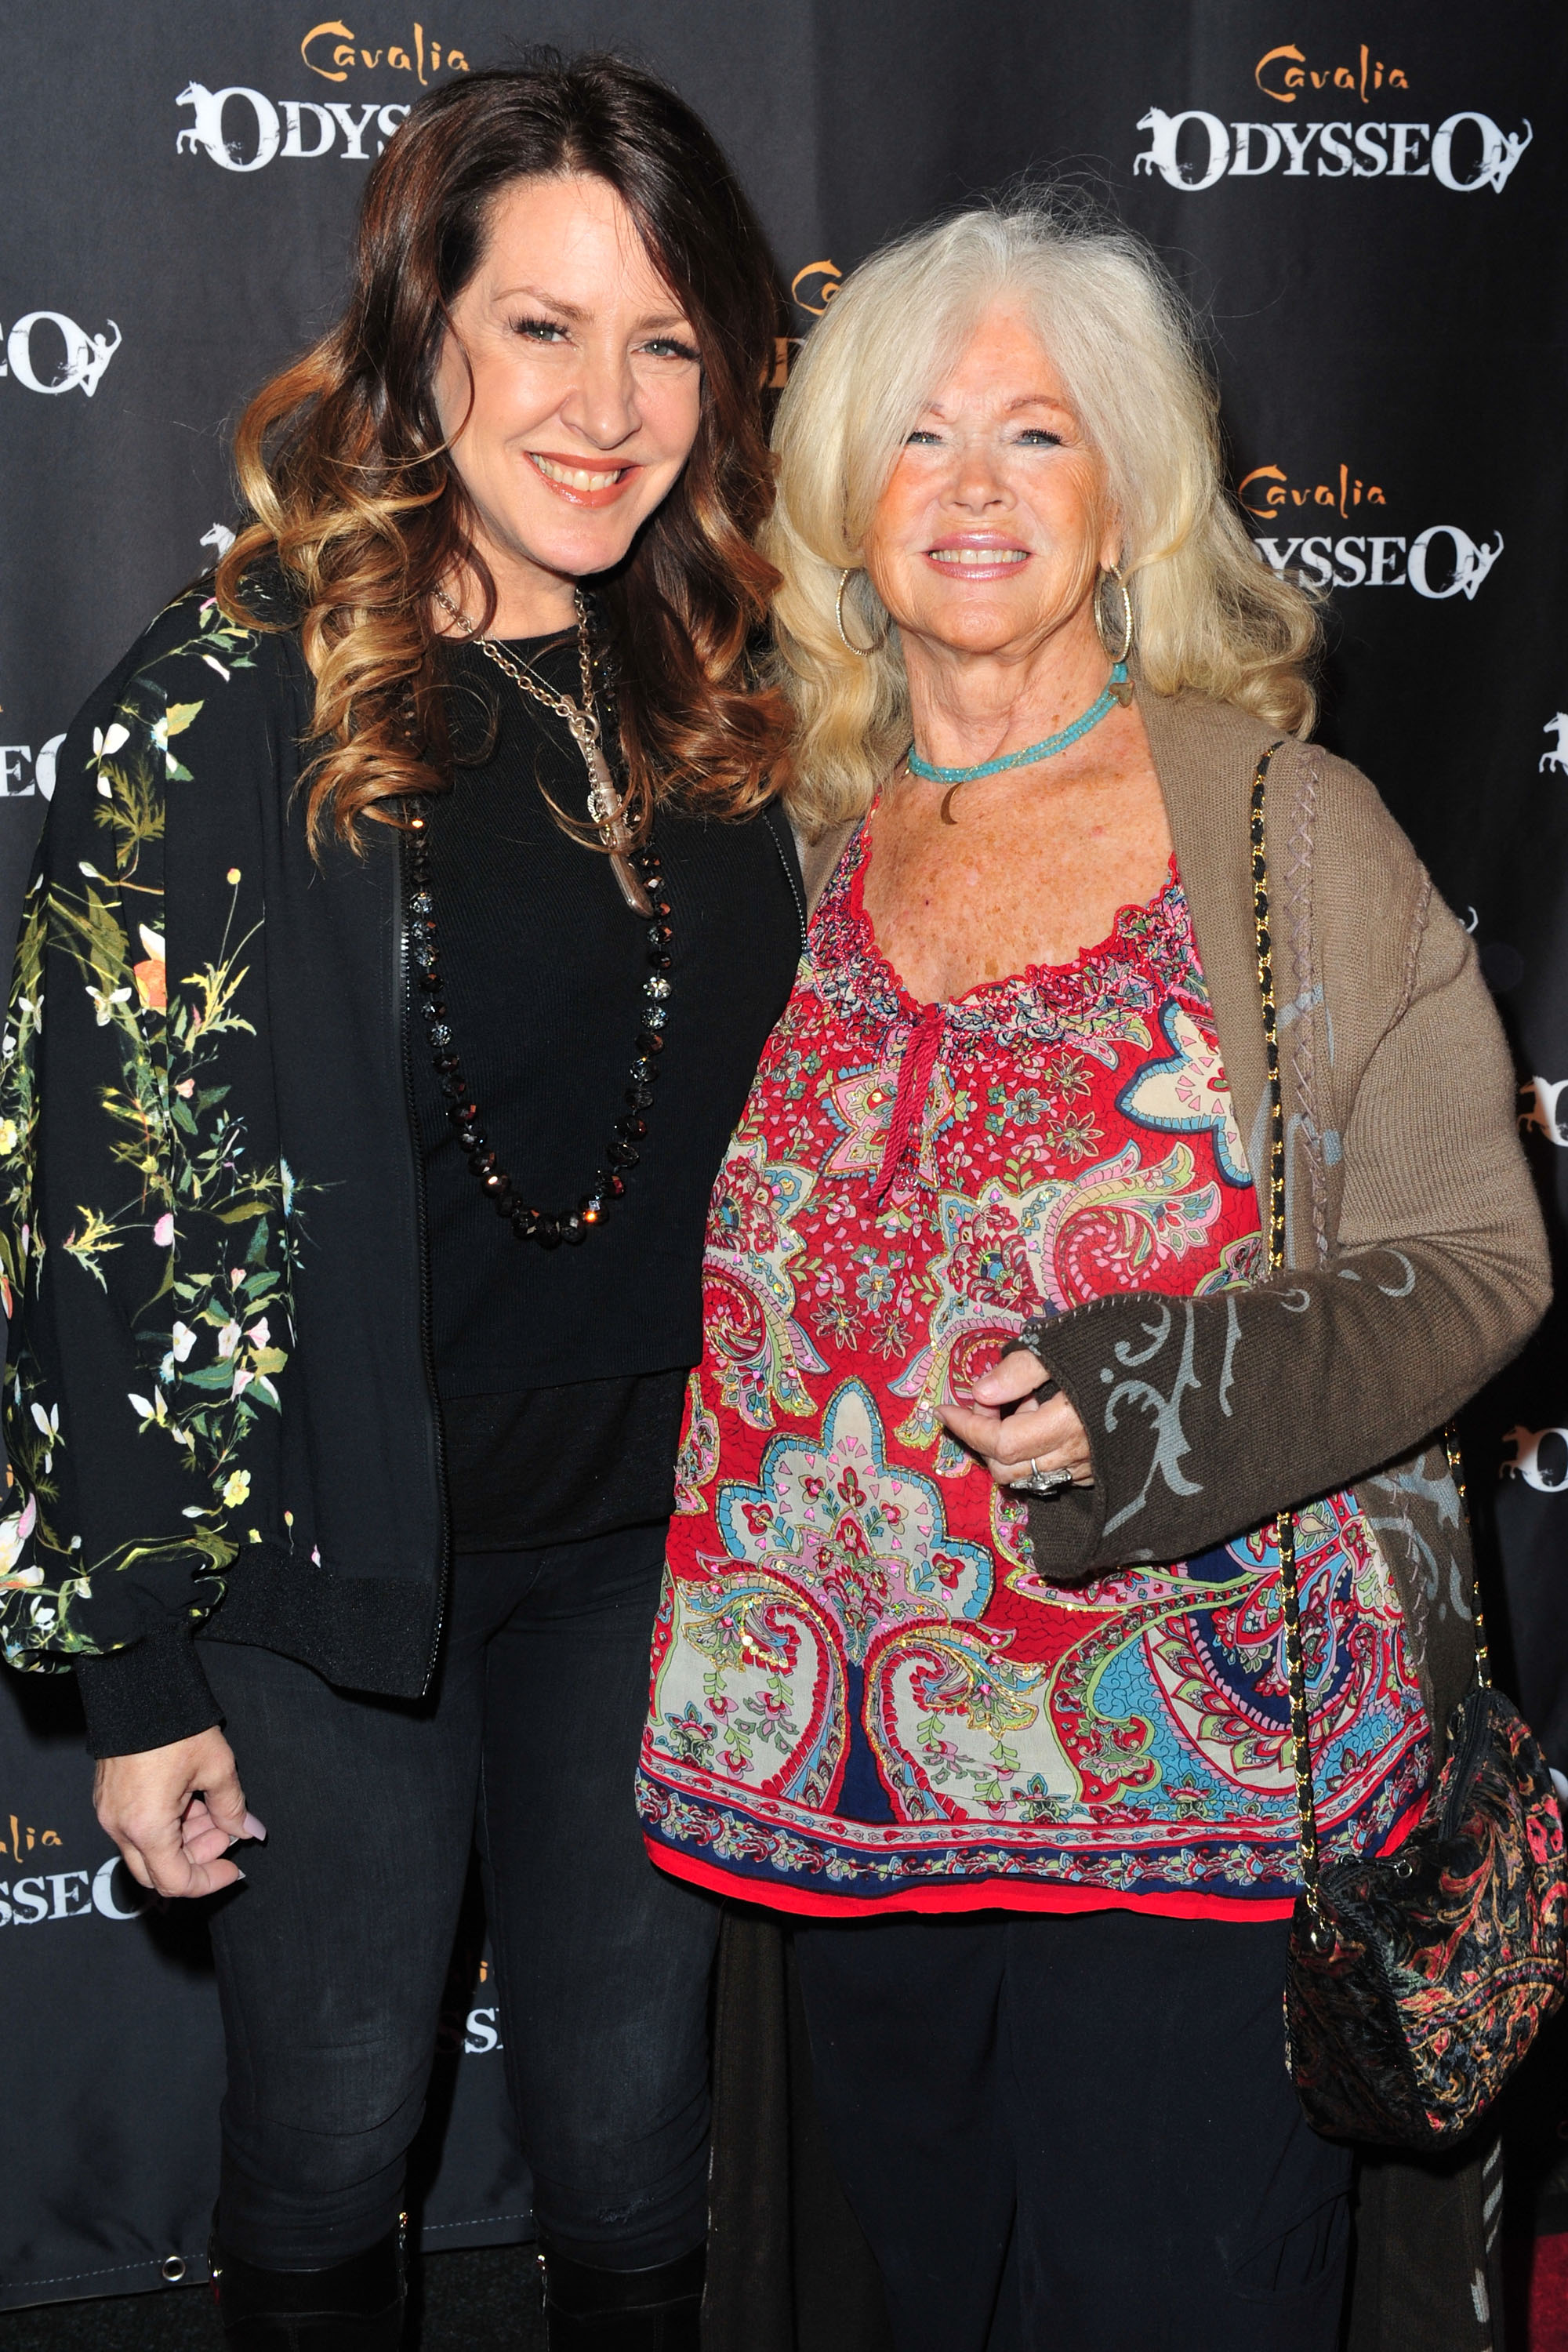 La actriz Joely Fisher y su madre Connie Stevens llegan al evento de estreno de "Odysseo By Cavalia" el 19 de noviembre de 2016 en Irvine, California | Foto: Getty Images